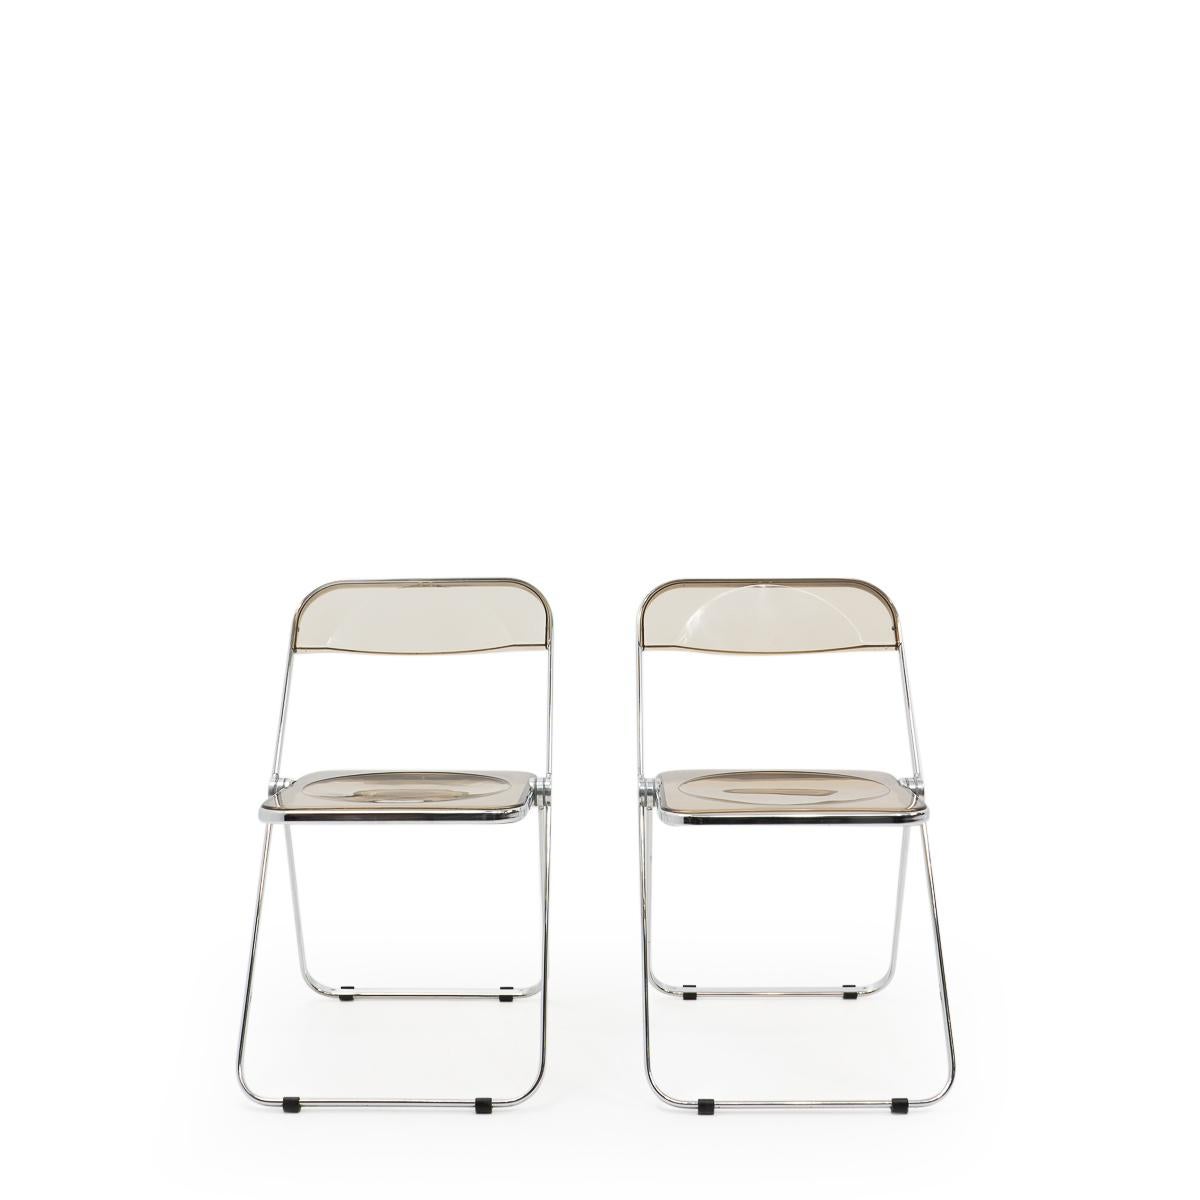 Die klappbaren Stühle Plia, hergestellt von Castelli und entworfen von Giancarlo Piretti (auch bekannt für die Lounge-Sessel Alky oder Plona).

Diese kultigen Klappstühle sind immer noch in sehr gutem Zustand und sehr praktisch in ihrer